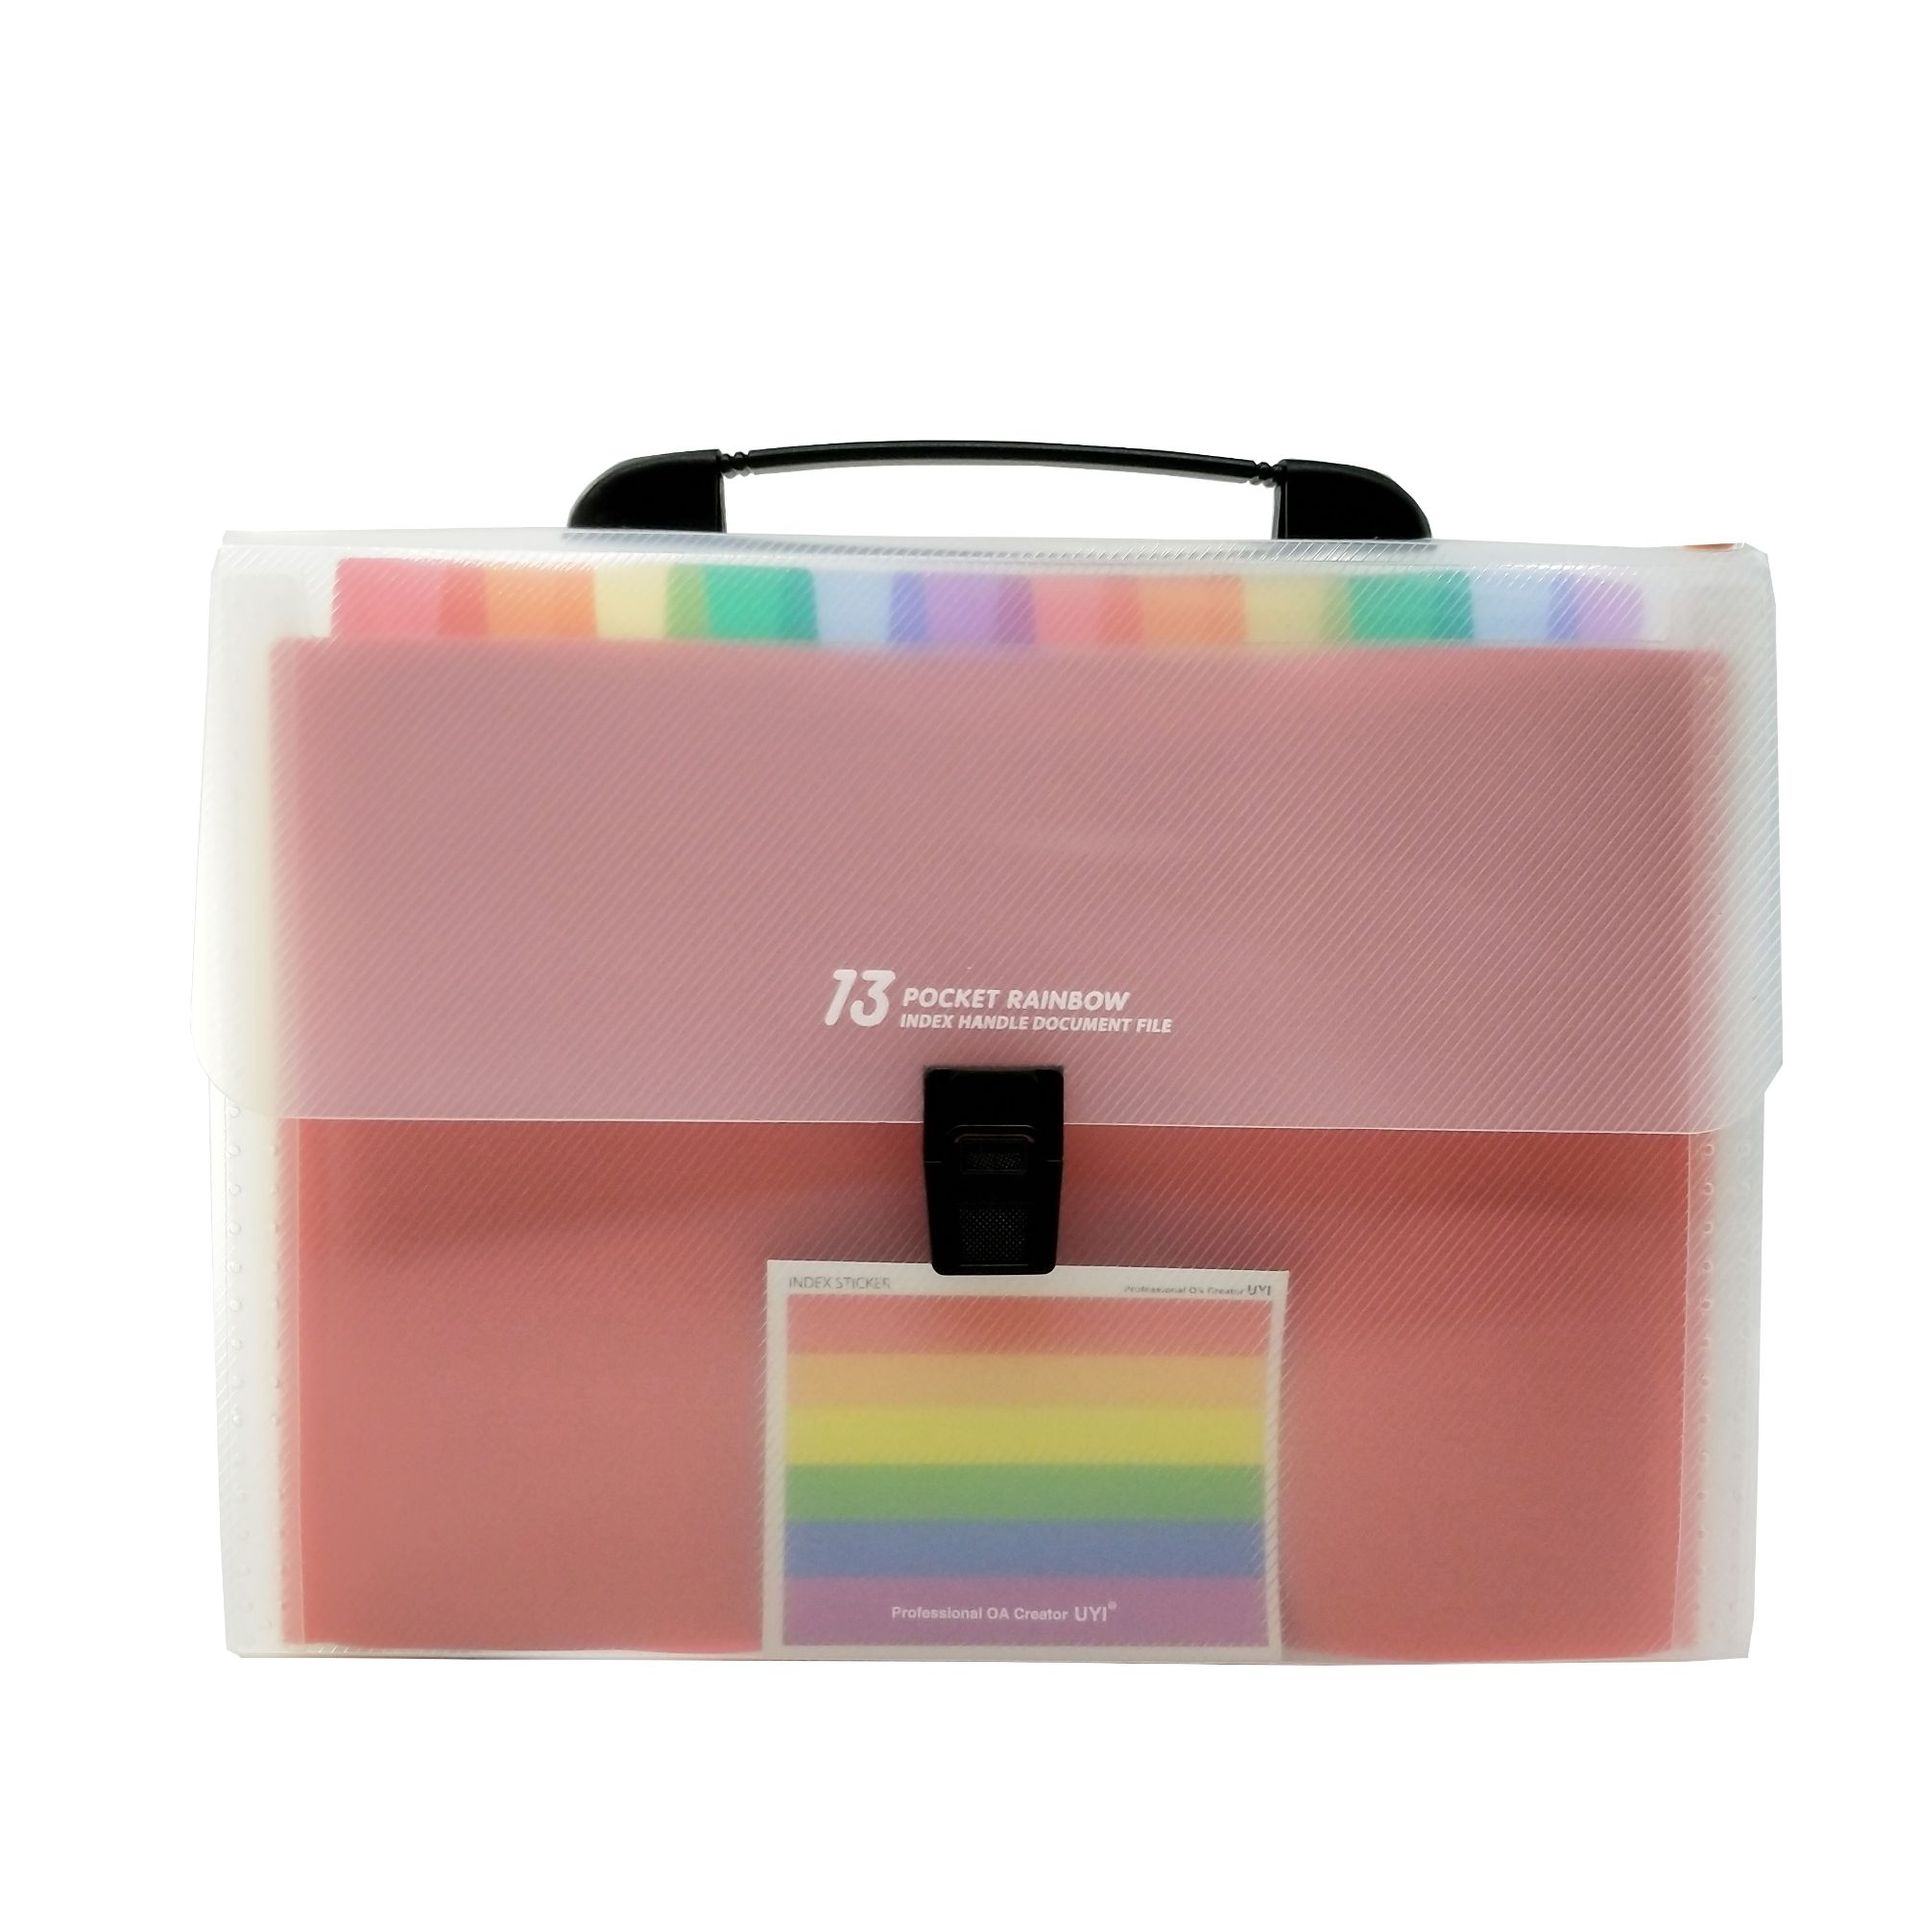 24 Pockets Portable Expandable Plastic Filing Box